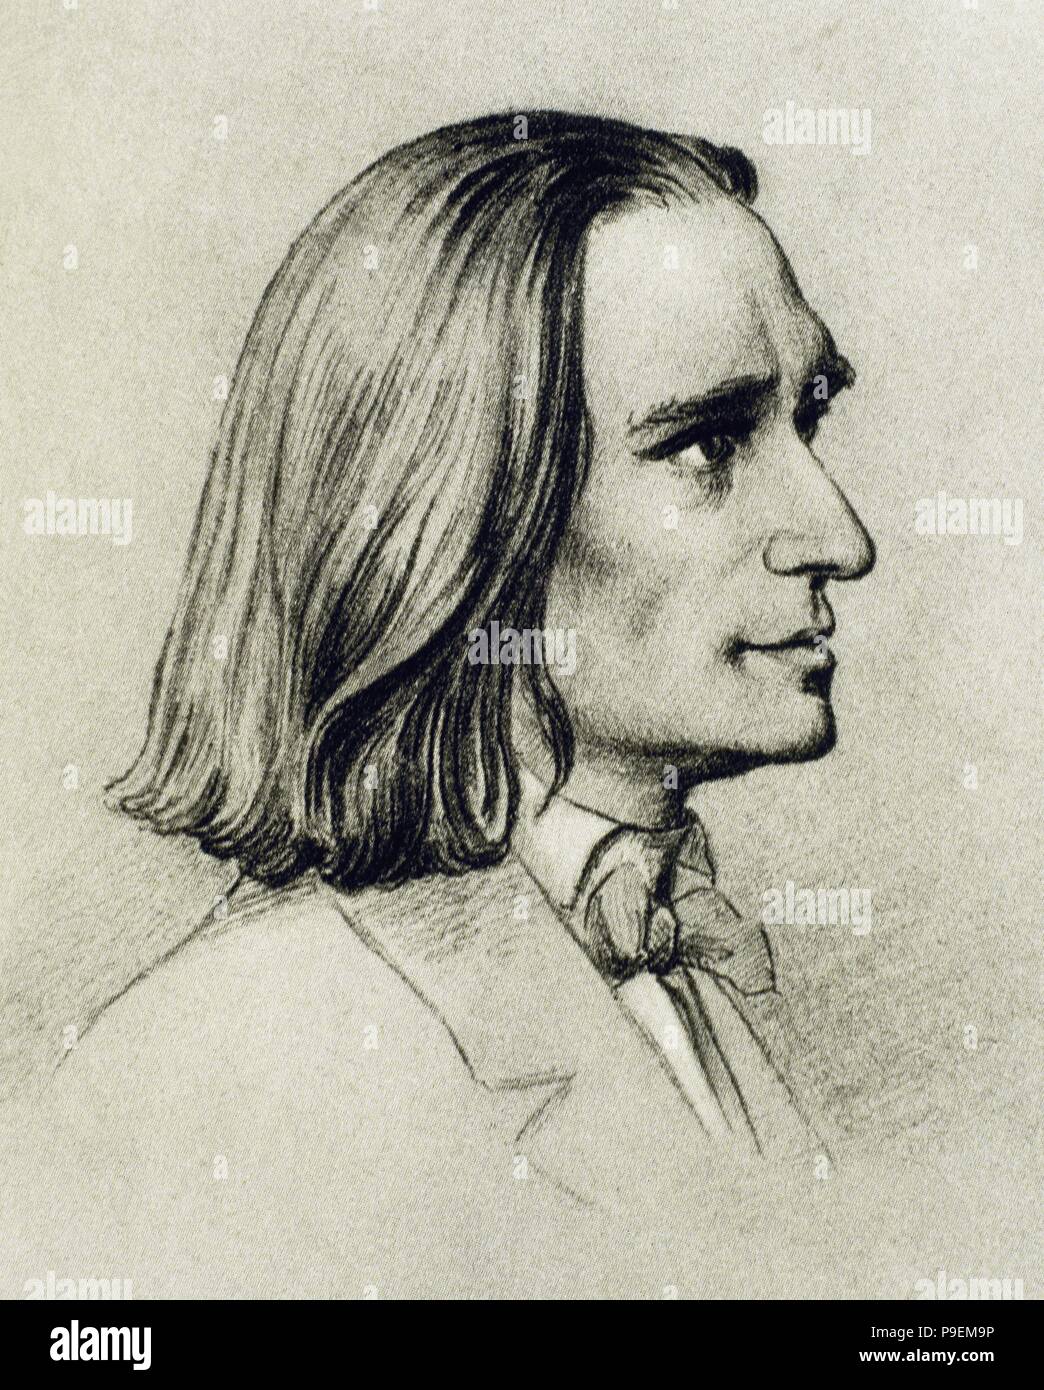 Franz Liszt (1811-1886). Compositeur et pianiste hongrois. Portrait. Dessin de Friedrich Preller l'ancien (1804-1878). Musée Liszt. Weimar. L'Allemagne. Banque D'Images